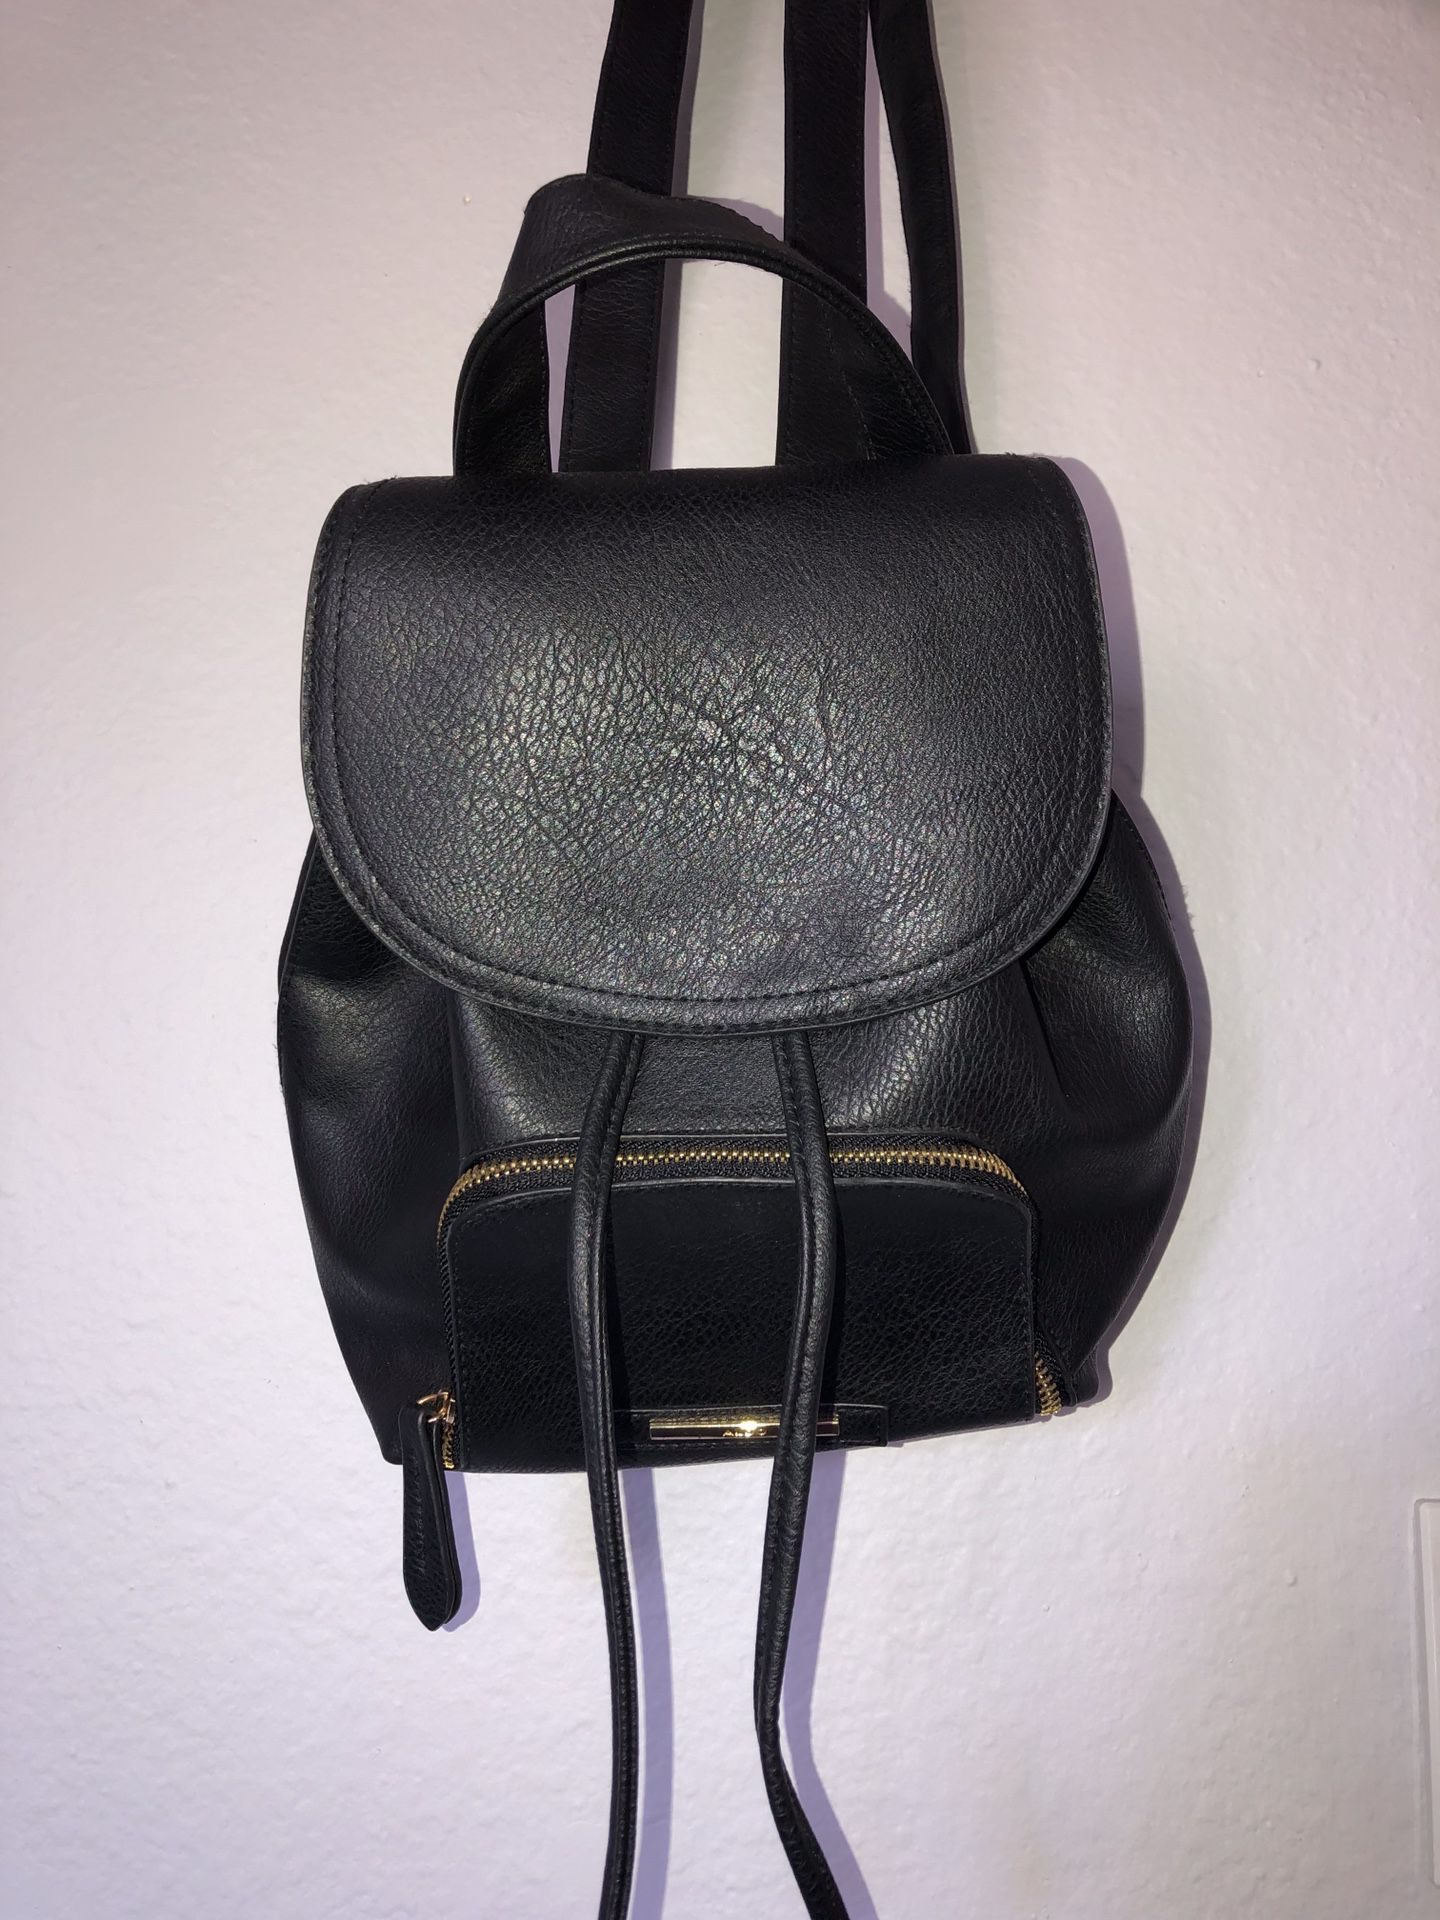 BRAND NEW black mini backpack